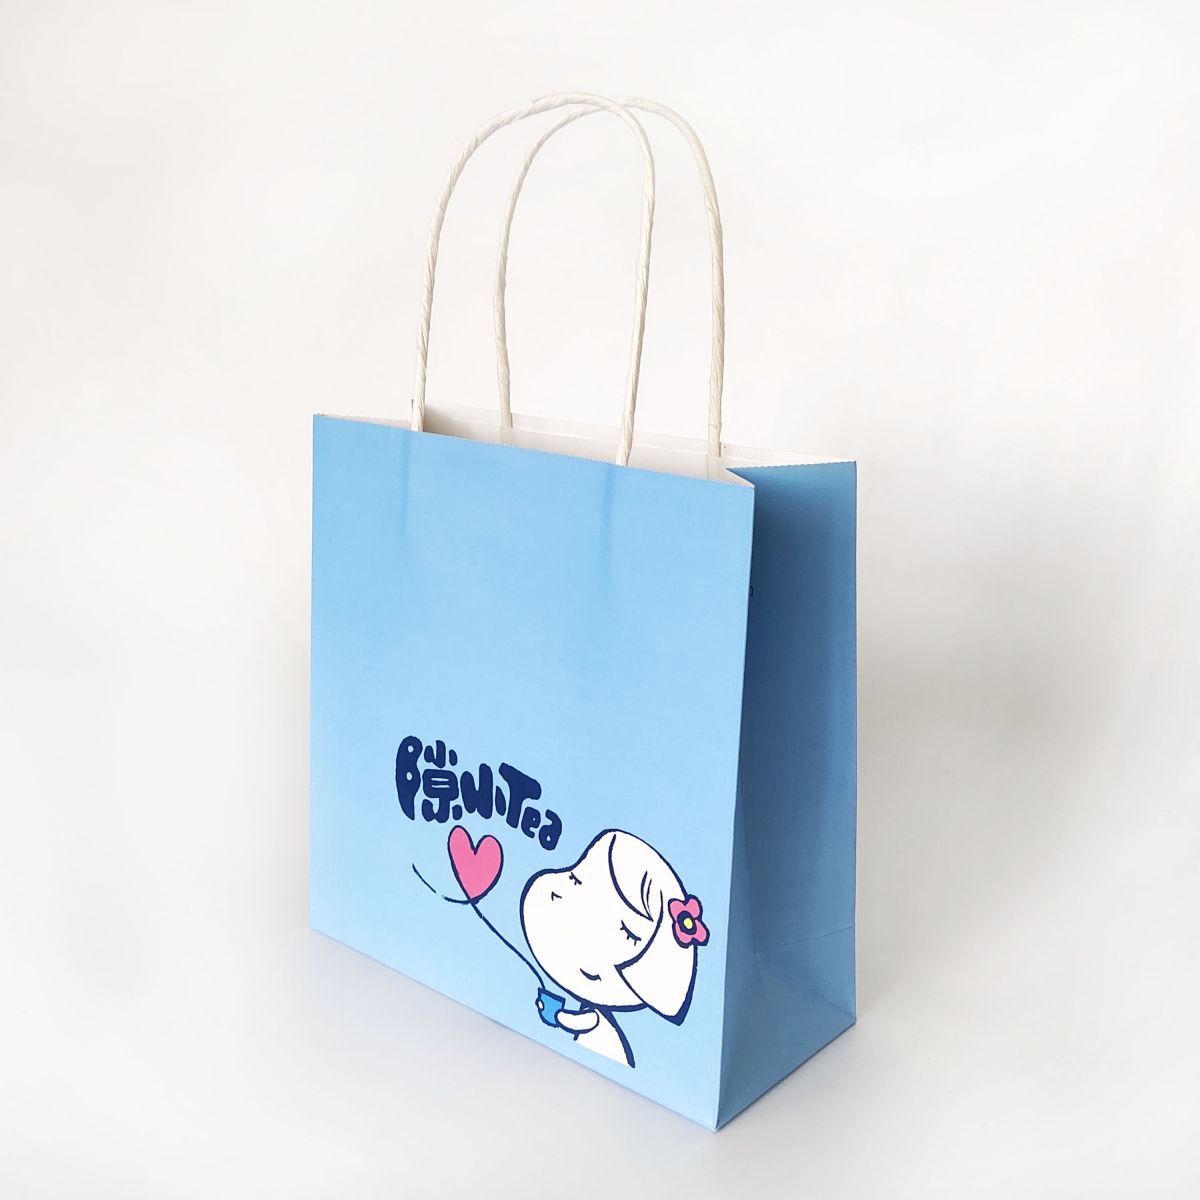 Cartoon Design Cute Paper Shopping Bag for Tea